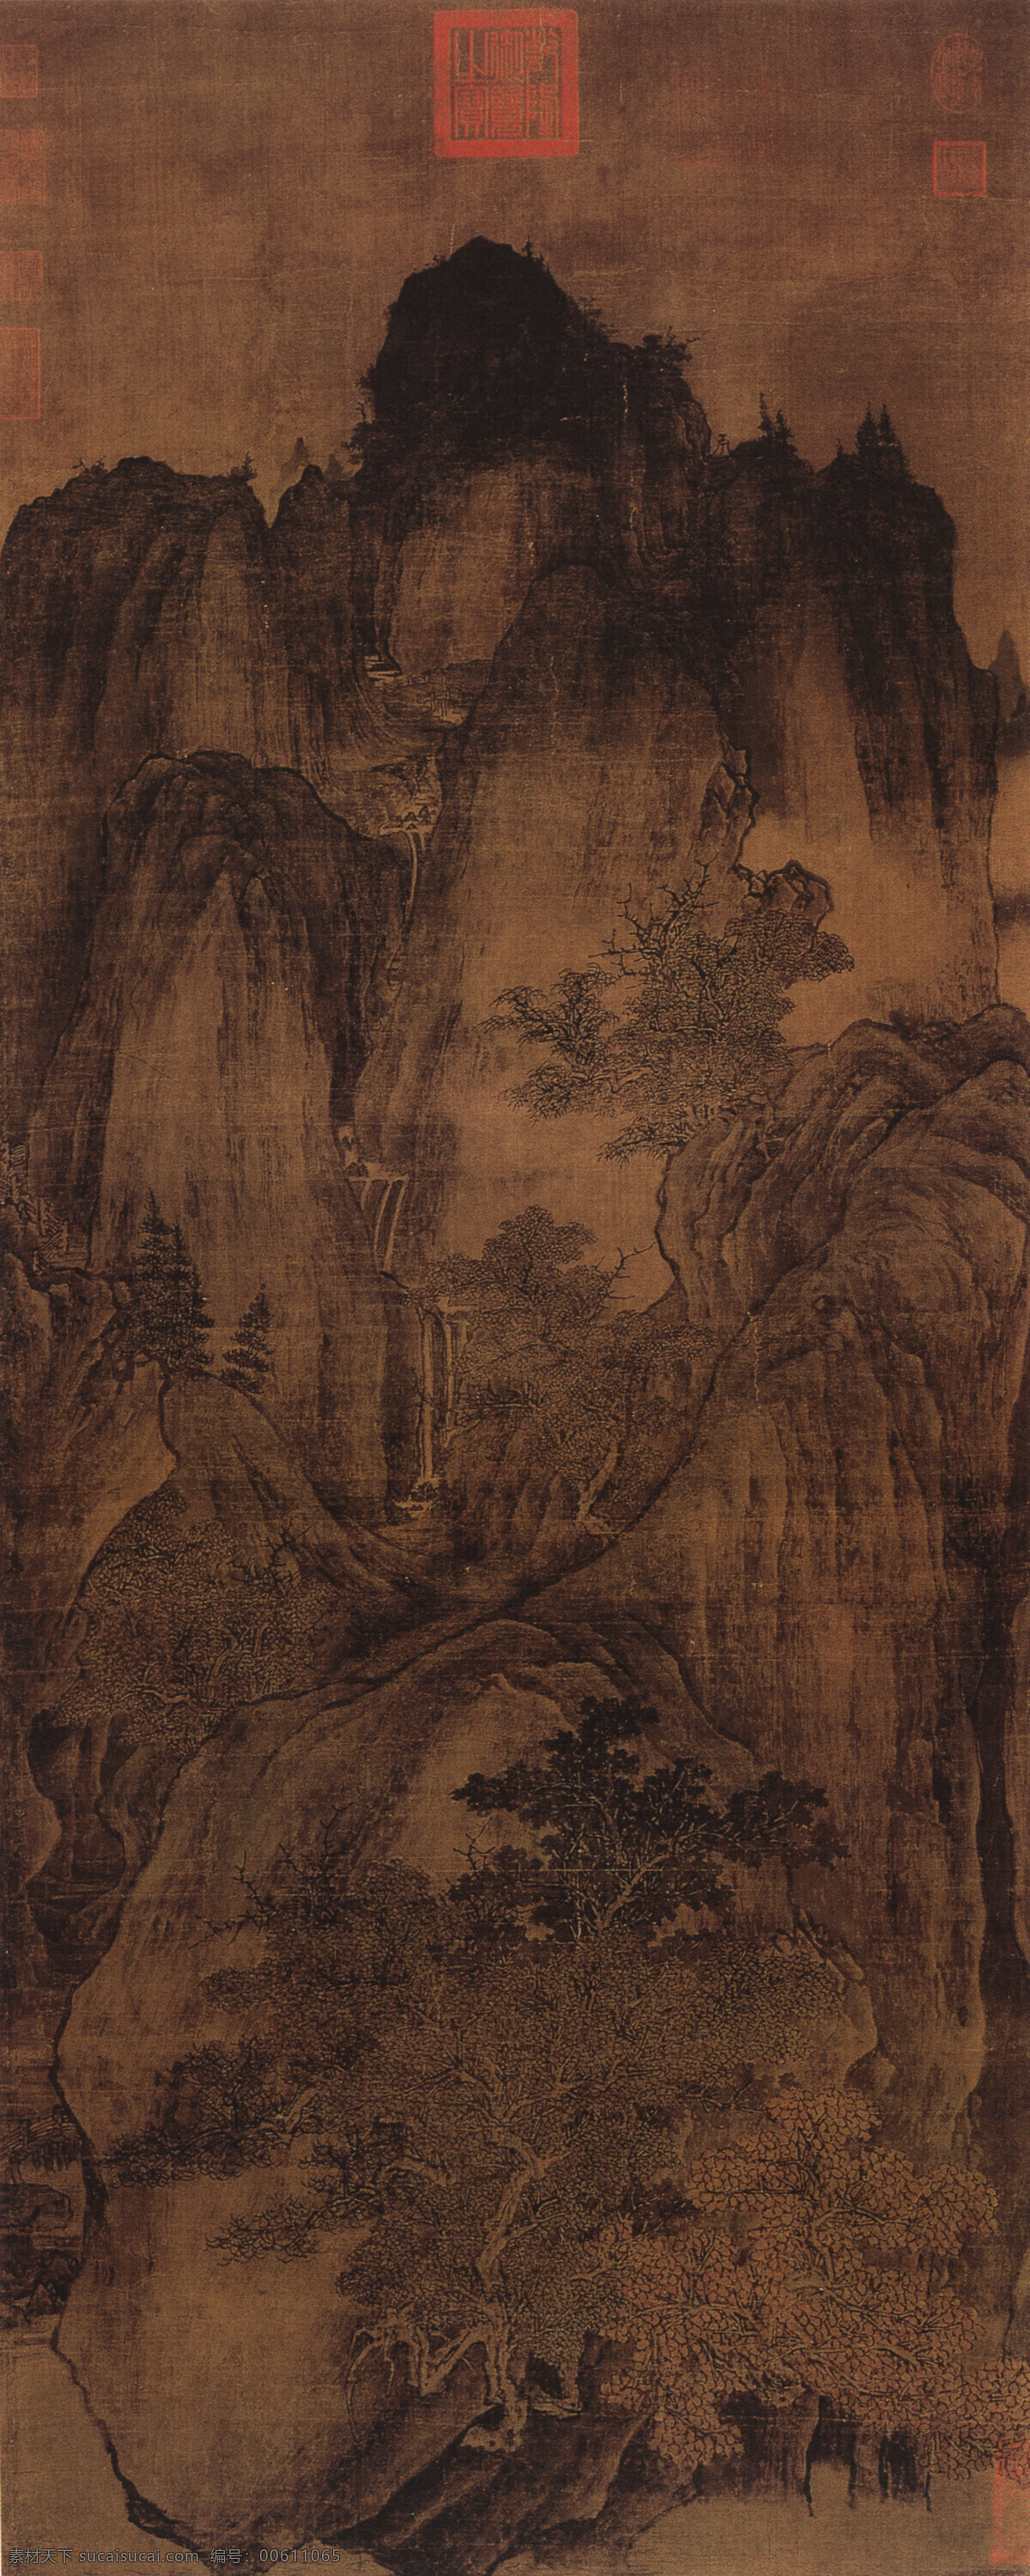 中国传世名画 文化艺术 绘画书法 设计图库